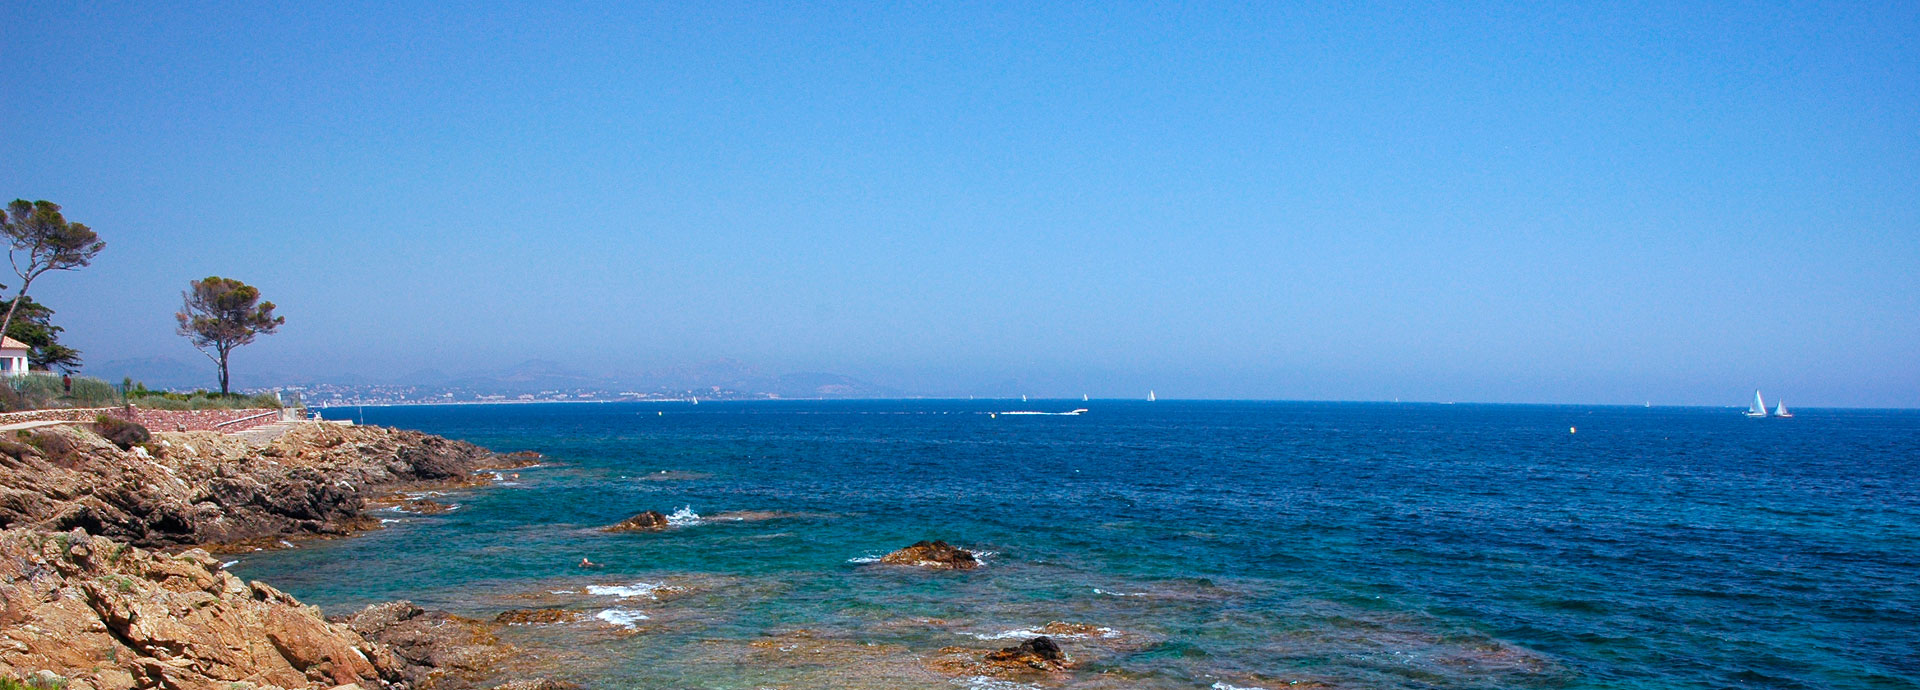 Ferienvermietungen unter der Sonne des Mittelmeers: Coralia Vacances